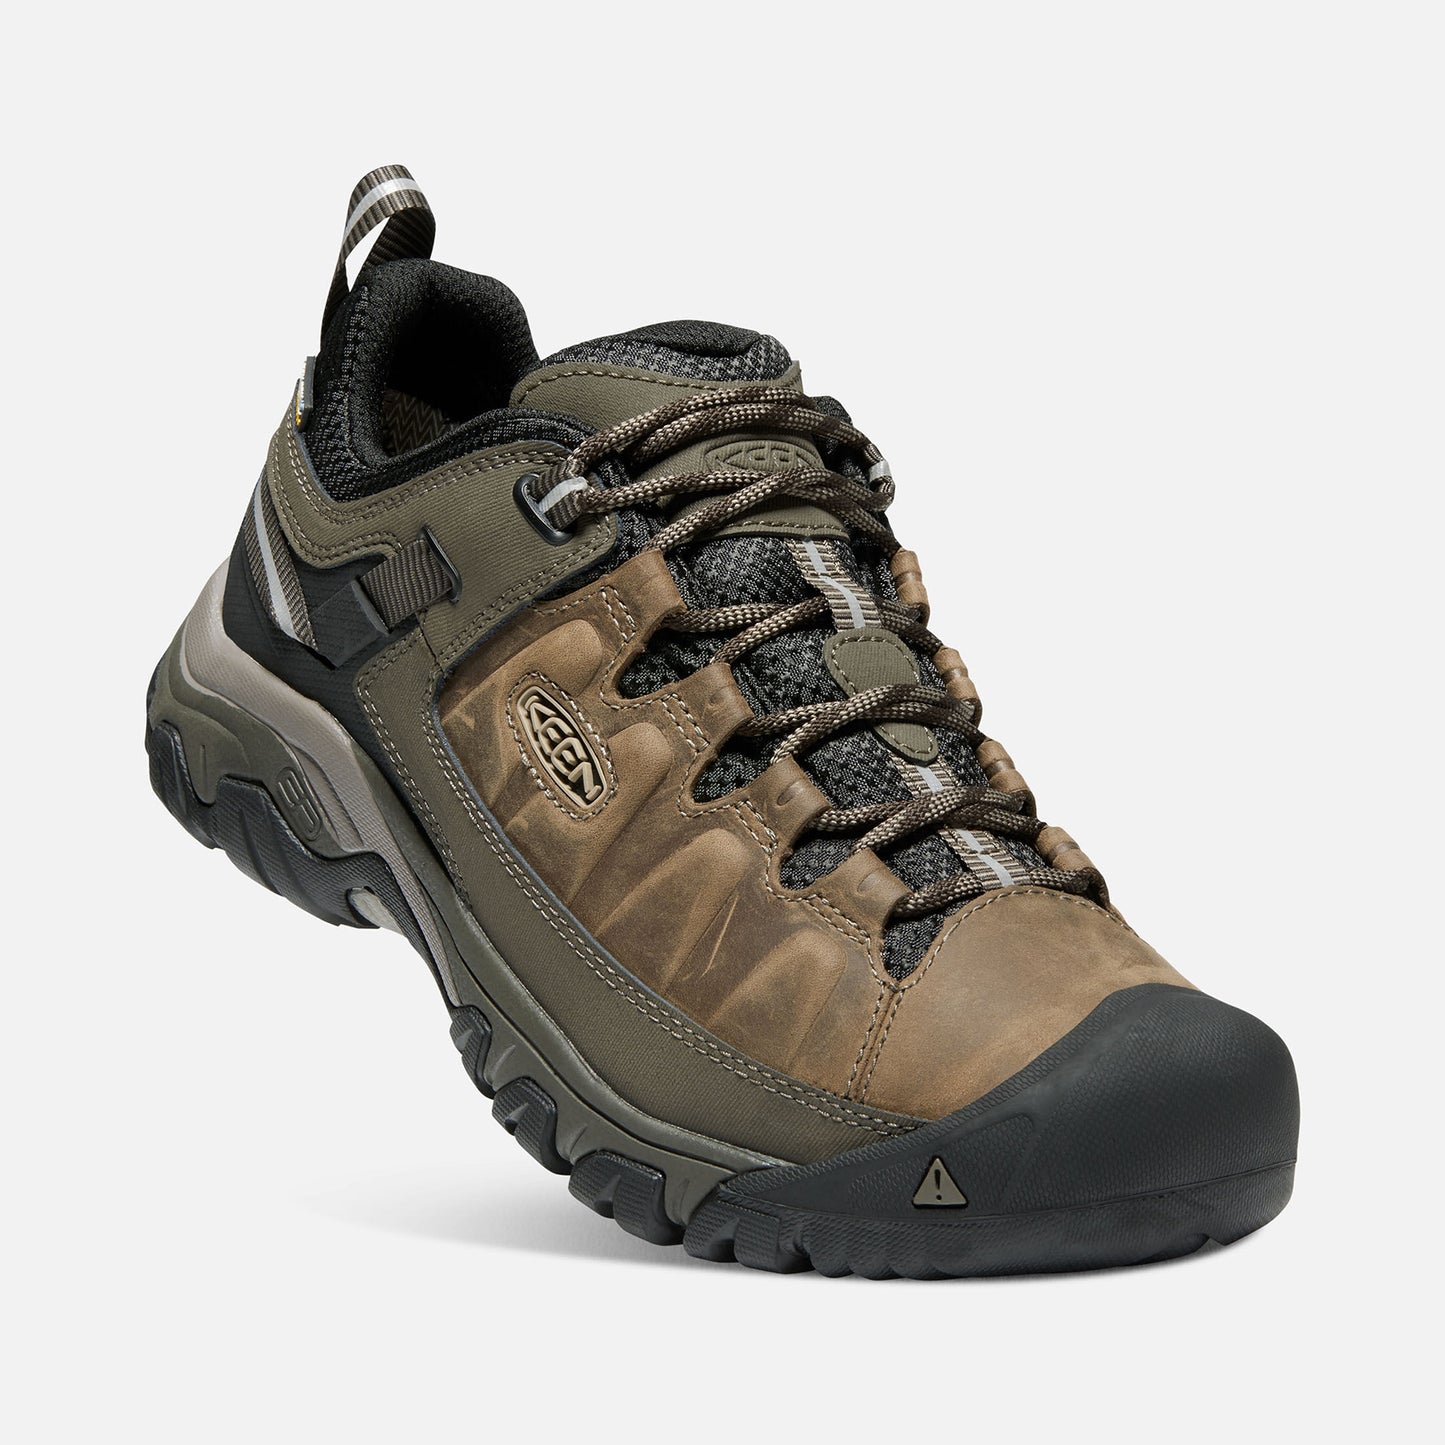 Men's Targhee III Waterproof Hiking Shoe - Bungee Cord/Black - Wide (2E)